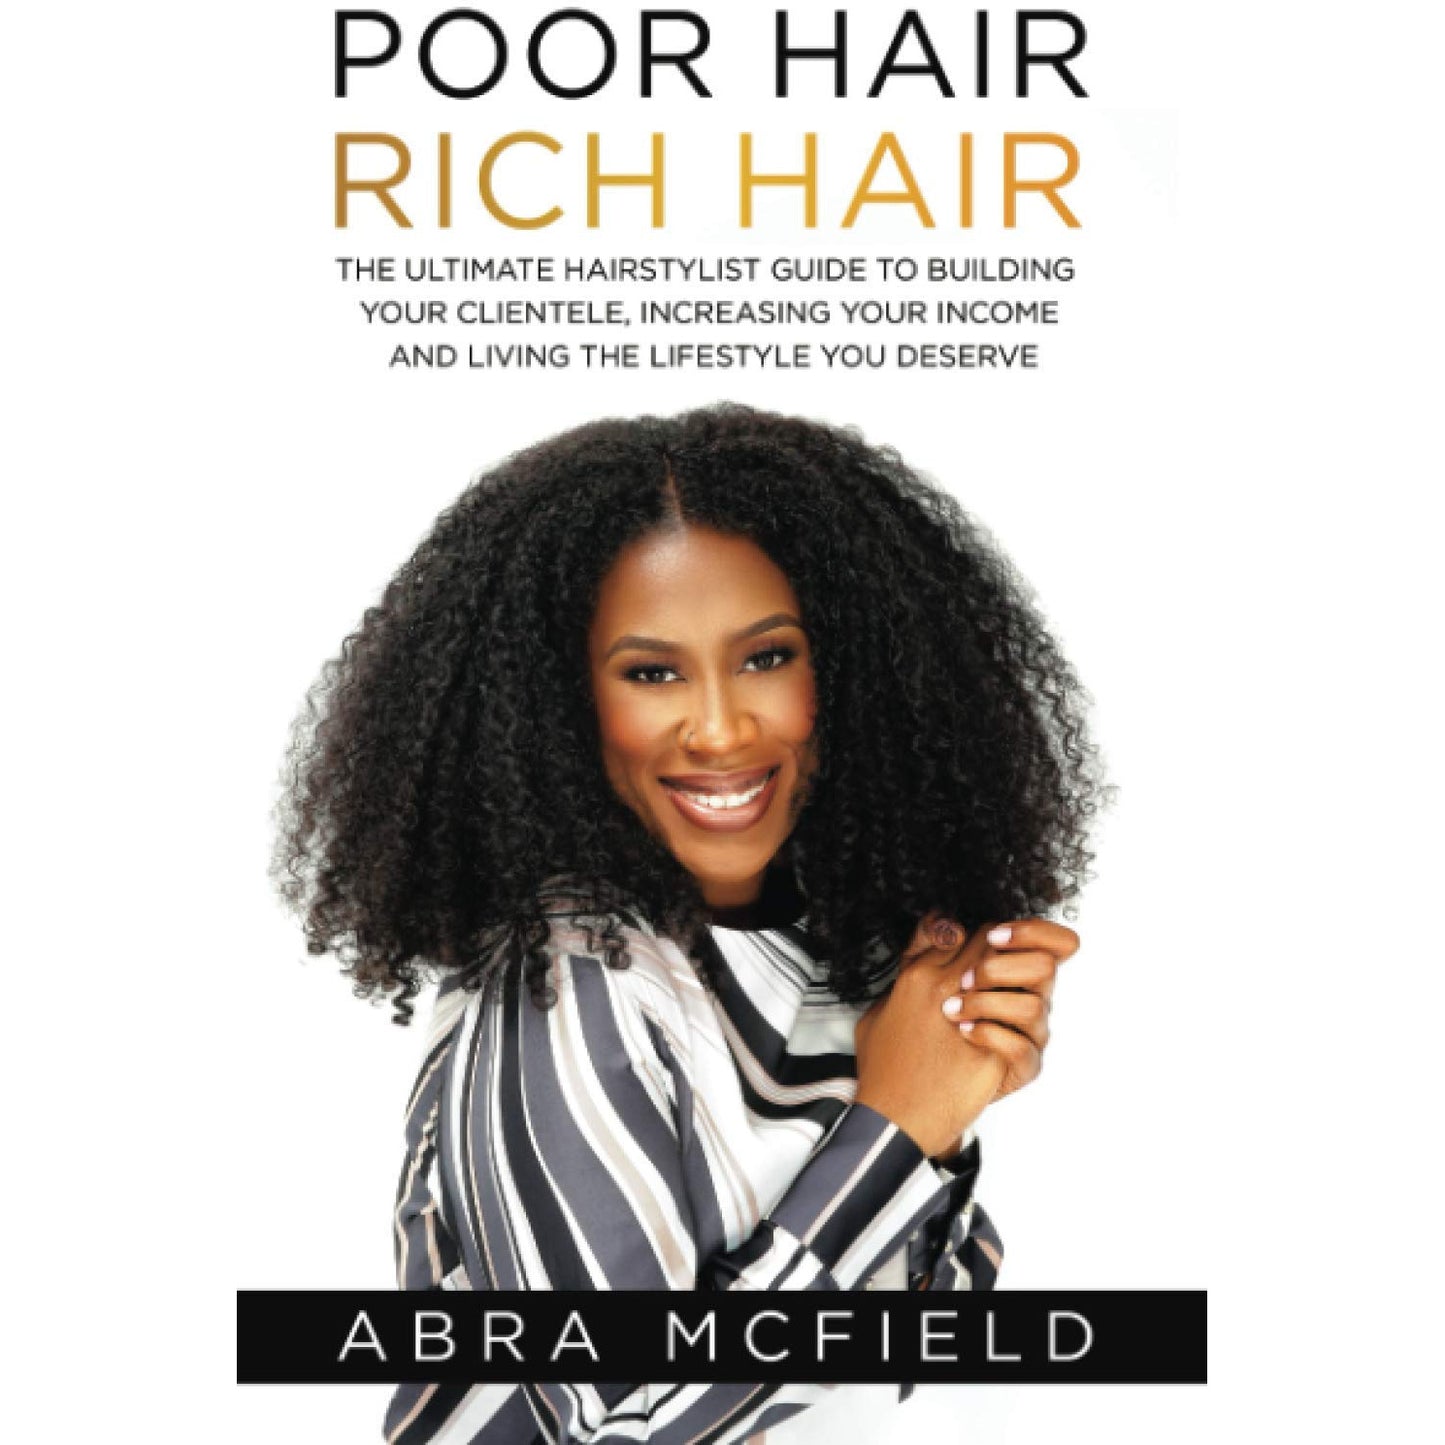 Poor Hair Rich Hair: THE BOOK